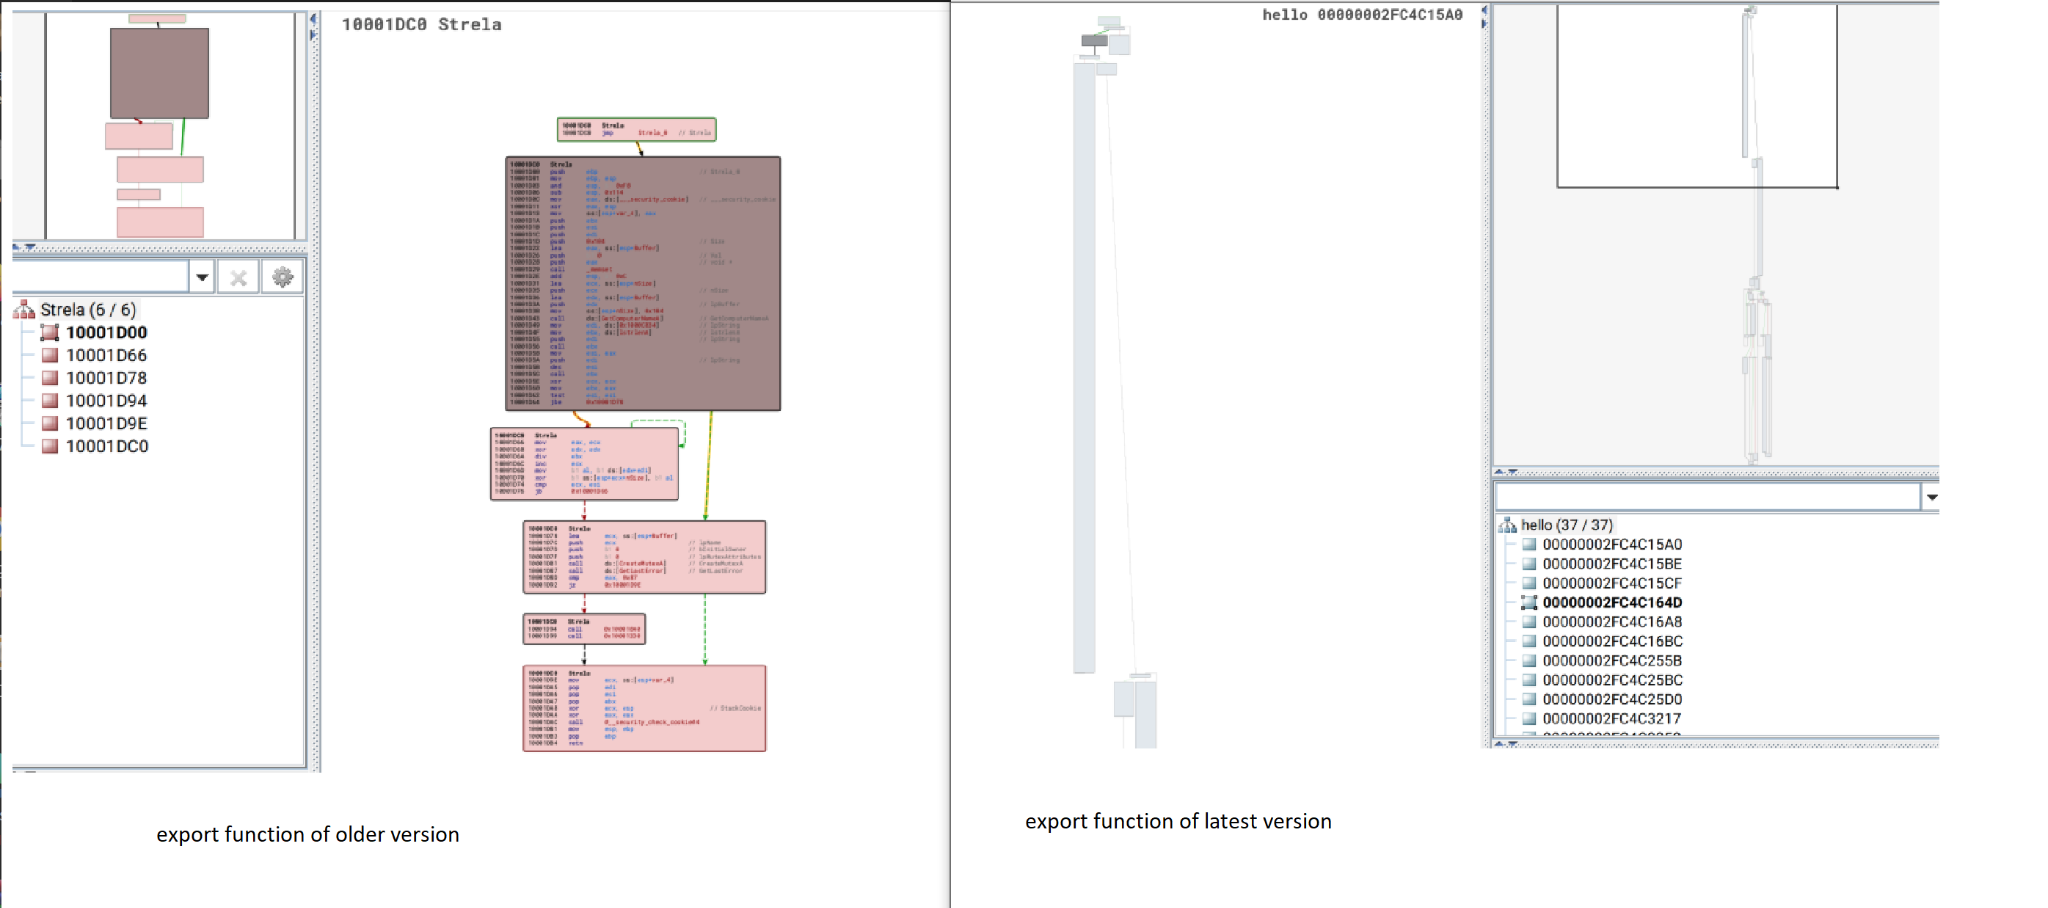 図 8 は、StrelaStealer の 2 つの異なるバージョンのエクスポート関数を比較した 2 つのスクリーンショットです。左が旧バージョンです。右が新バージョンです。